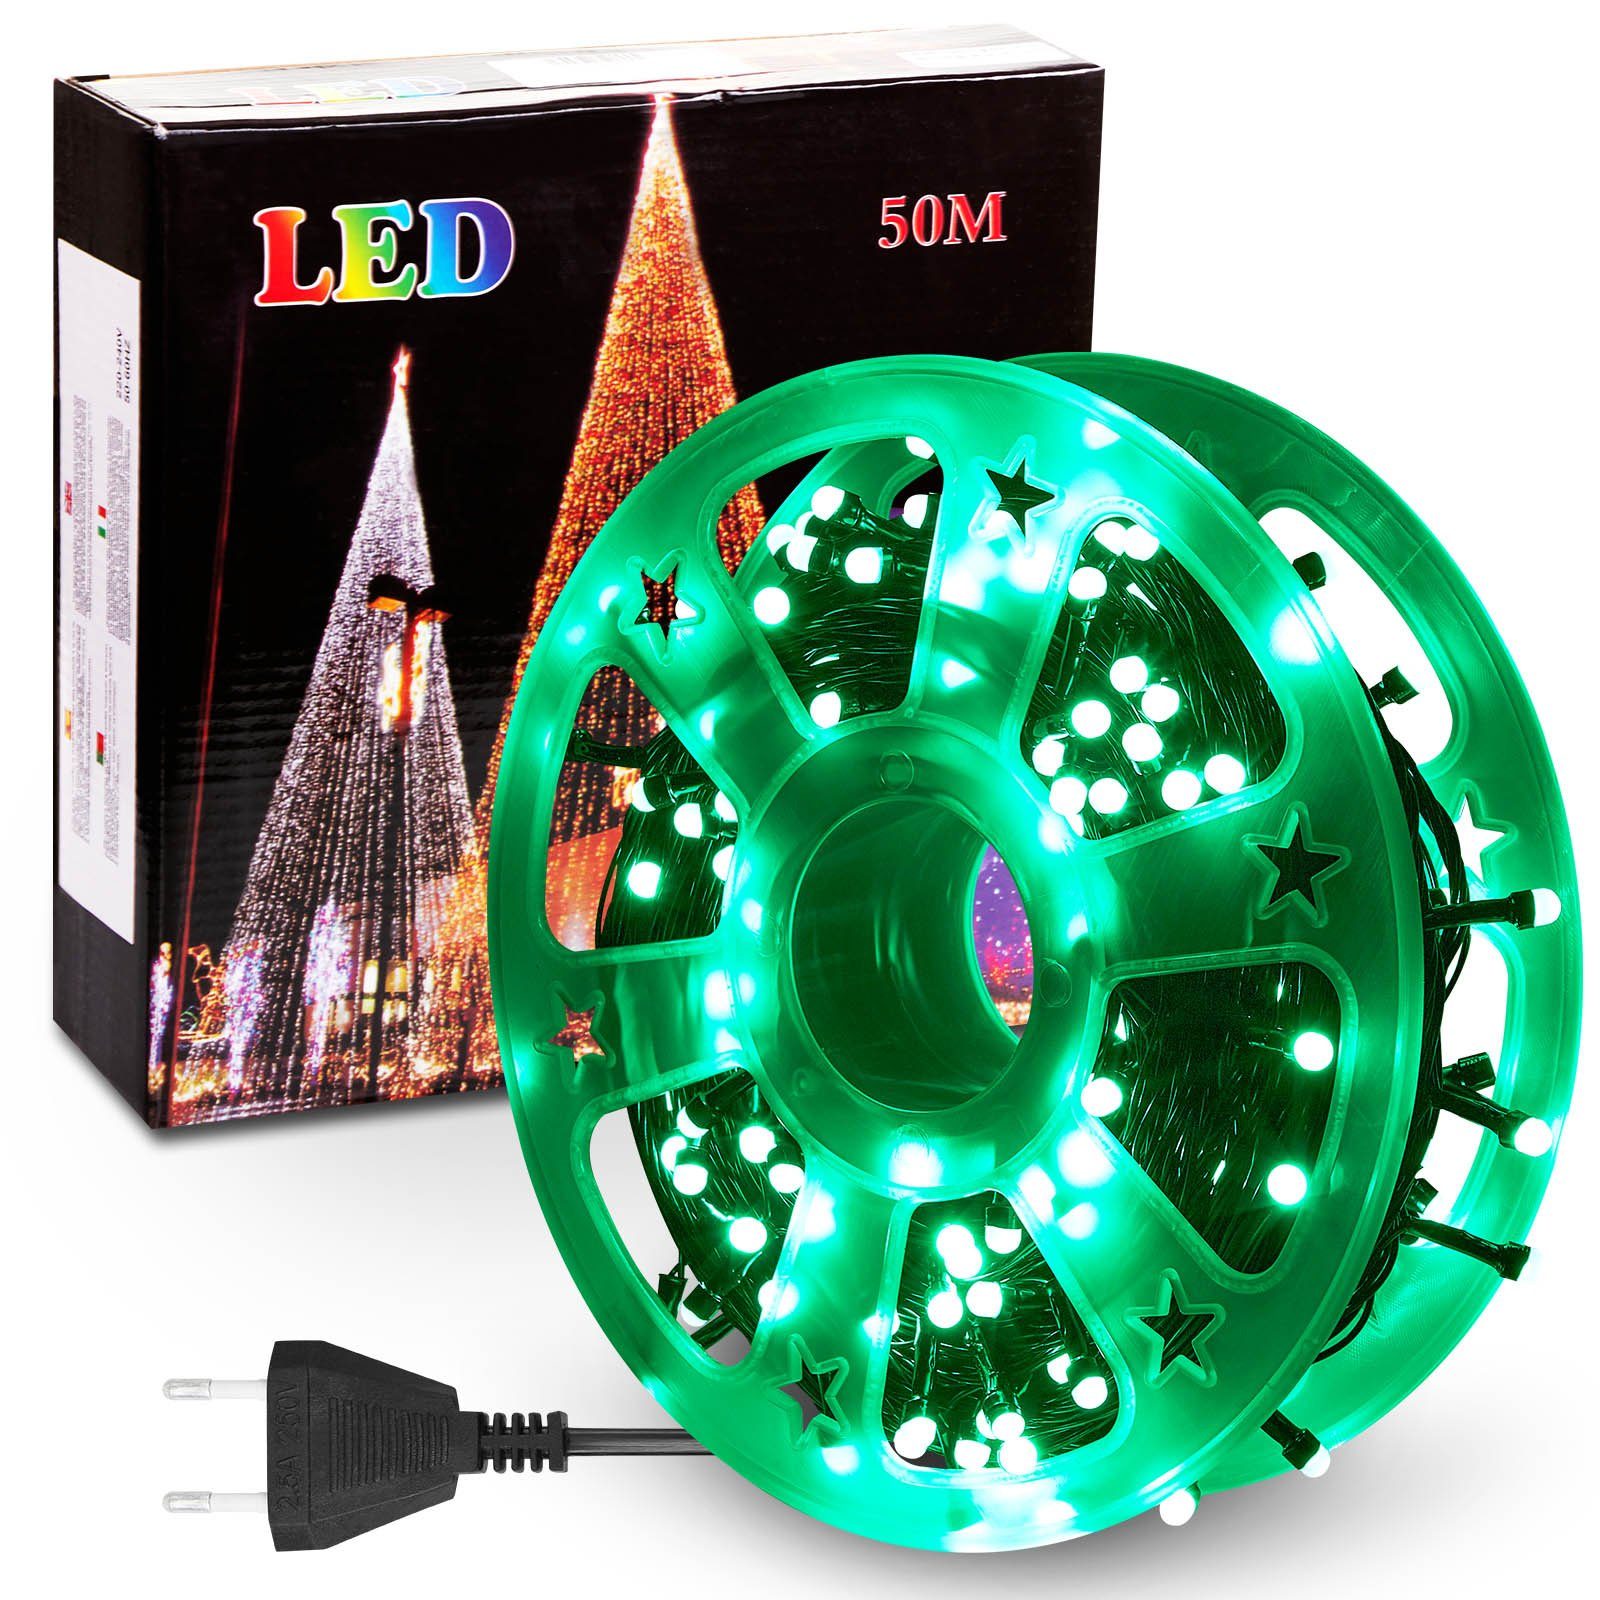 Rosnek LED-Lichterkette 50M, 240LEDs, 8 Modi, Speicherfunktion, für Weihnachtsbaum Garten Deko, wasserdicht, schwarzes Kabel, Spulenverpackung Grün